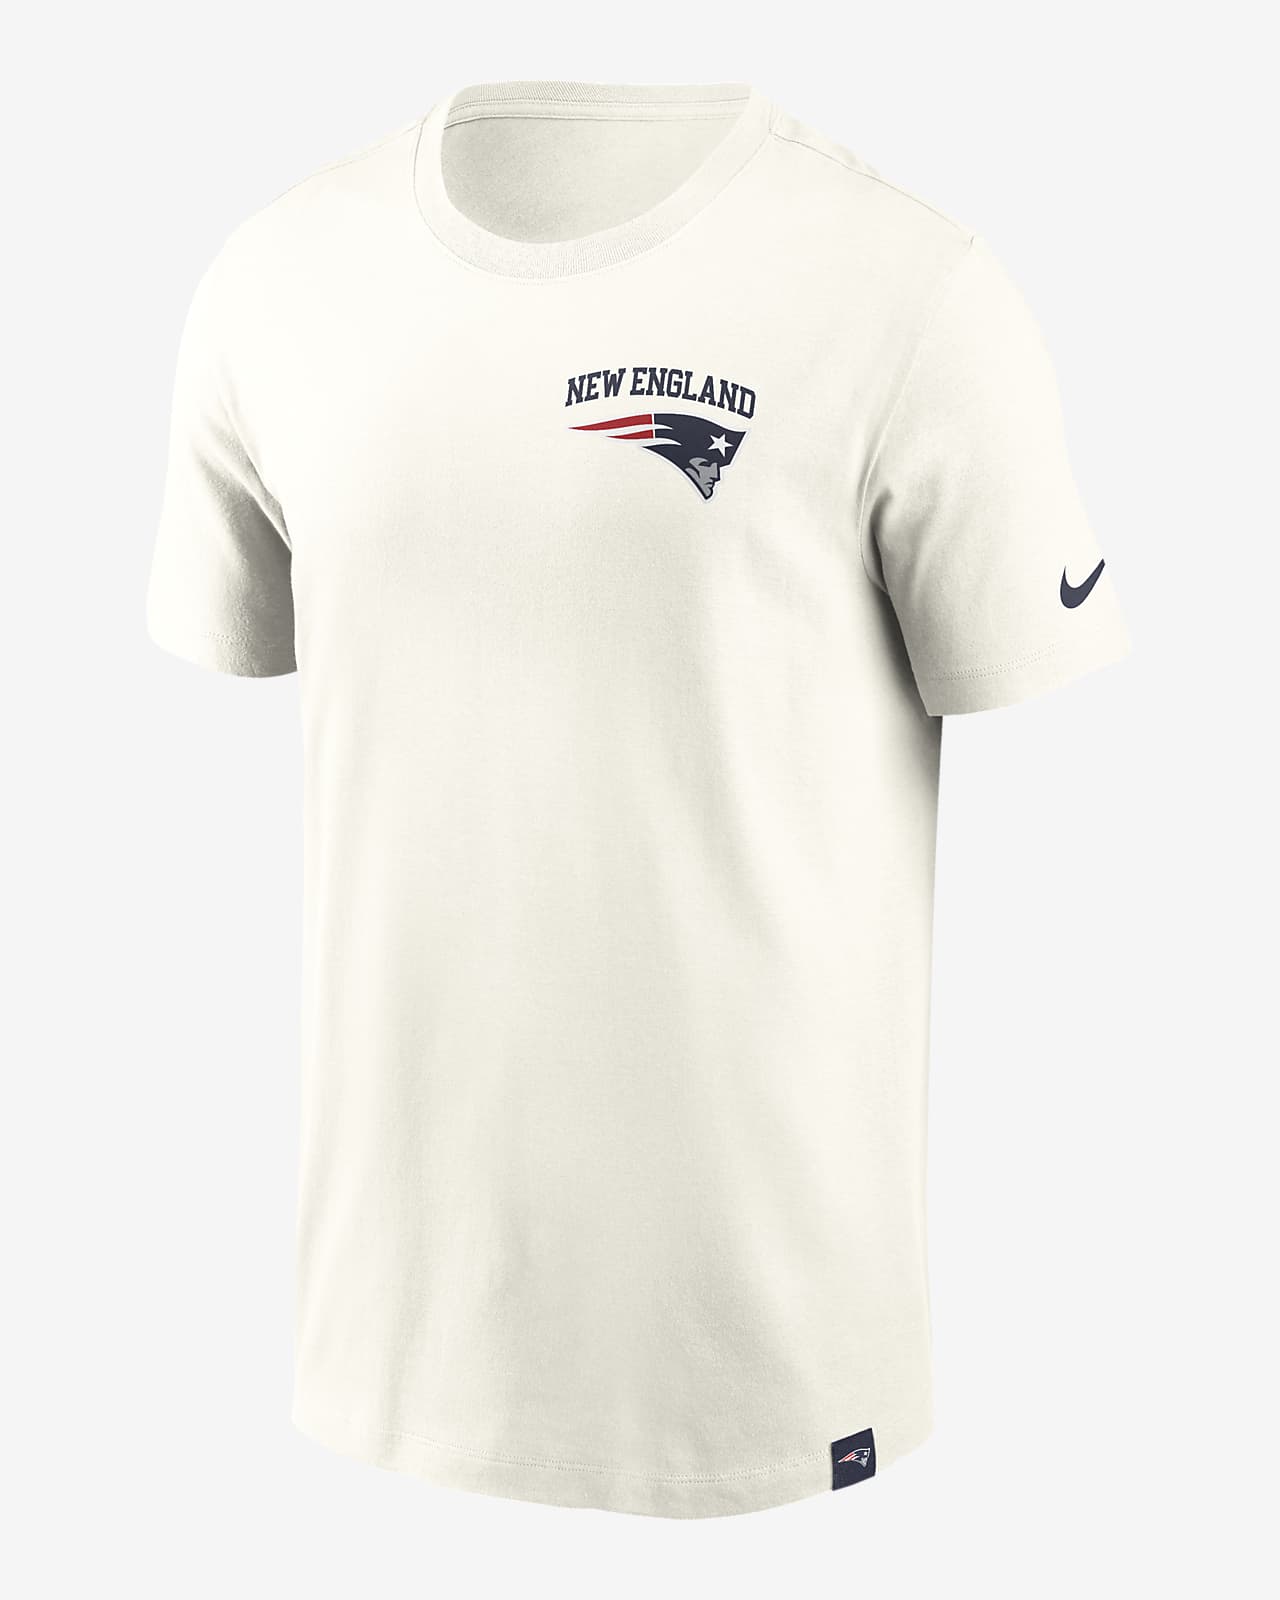 Playera Nike de la NFL para hombre New England Patriots Blitz Essential